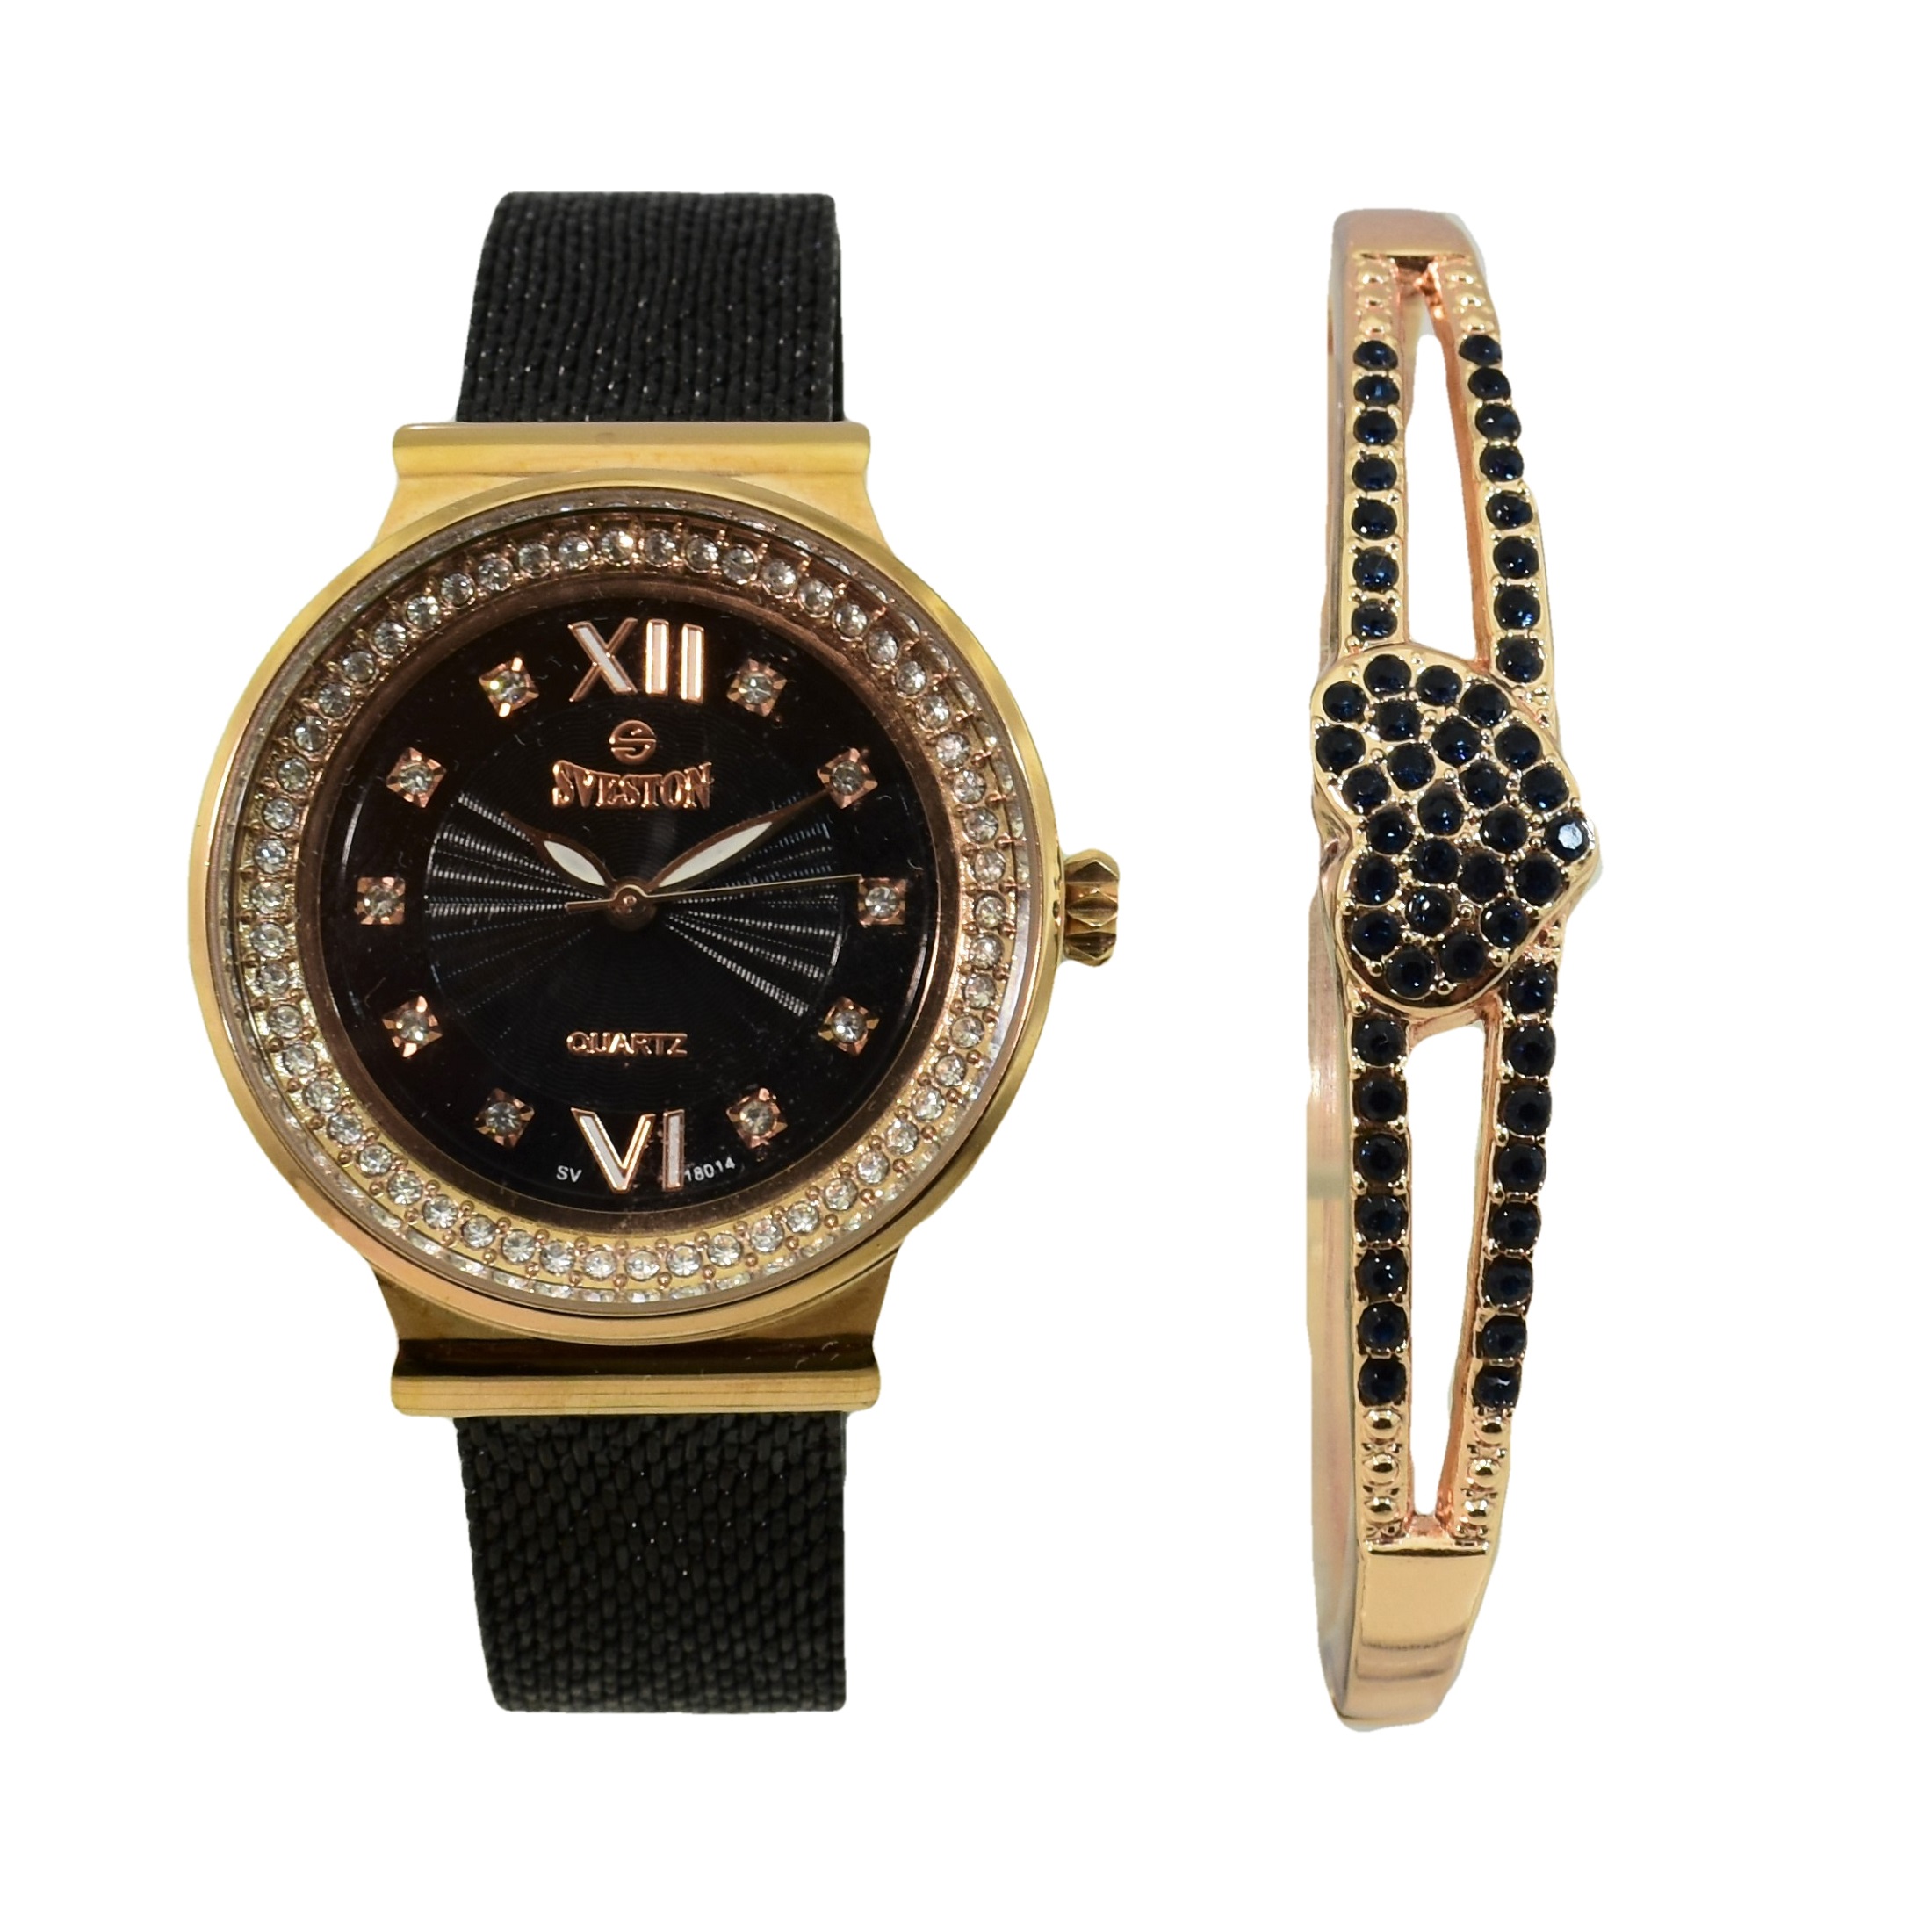 ساعت مچی عقربه ای زنانه سوستون مدل SV-18014 به همراه دستبند